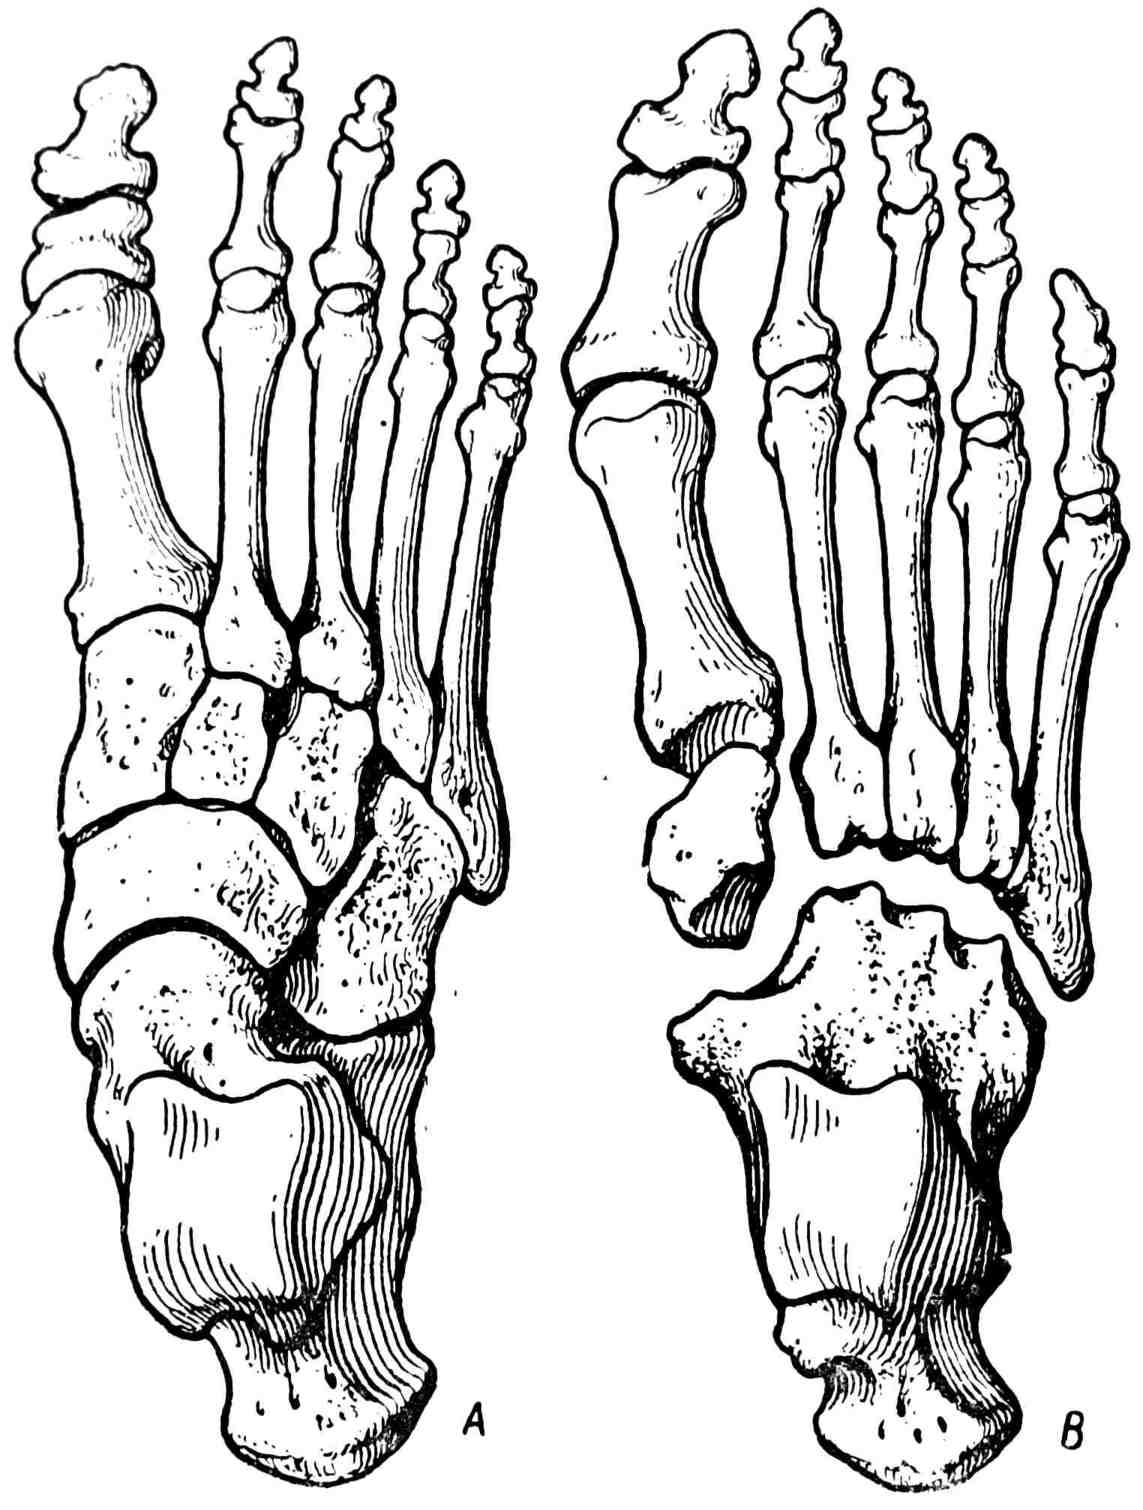 Рис. 336. А — стопа с двумя фалангами на каждом пальце; В — стопа со сросшимися тарзальными костями (Н. С. Маркелов, 1929).